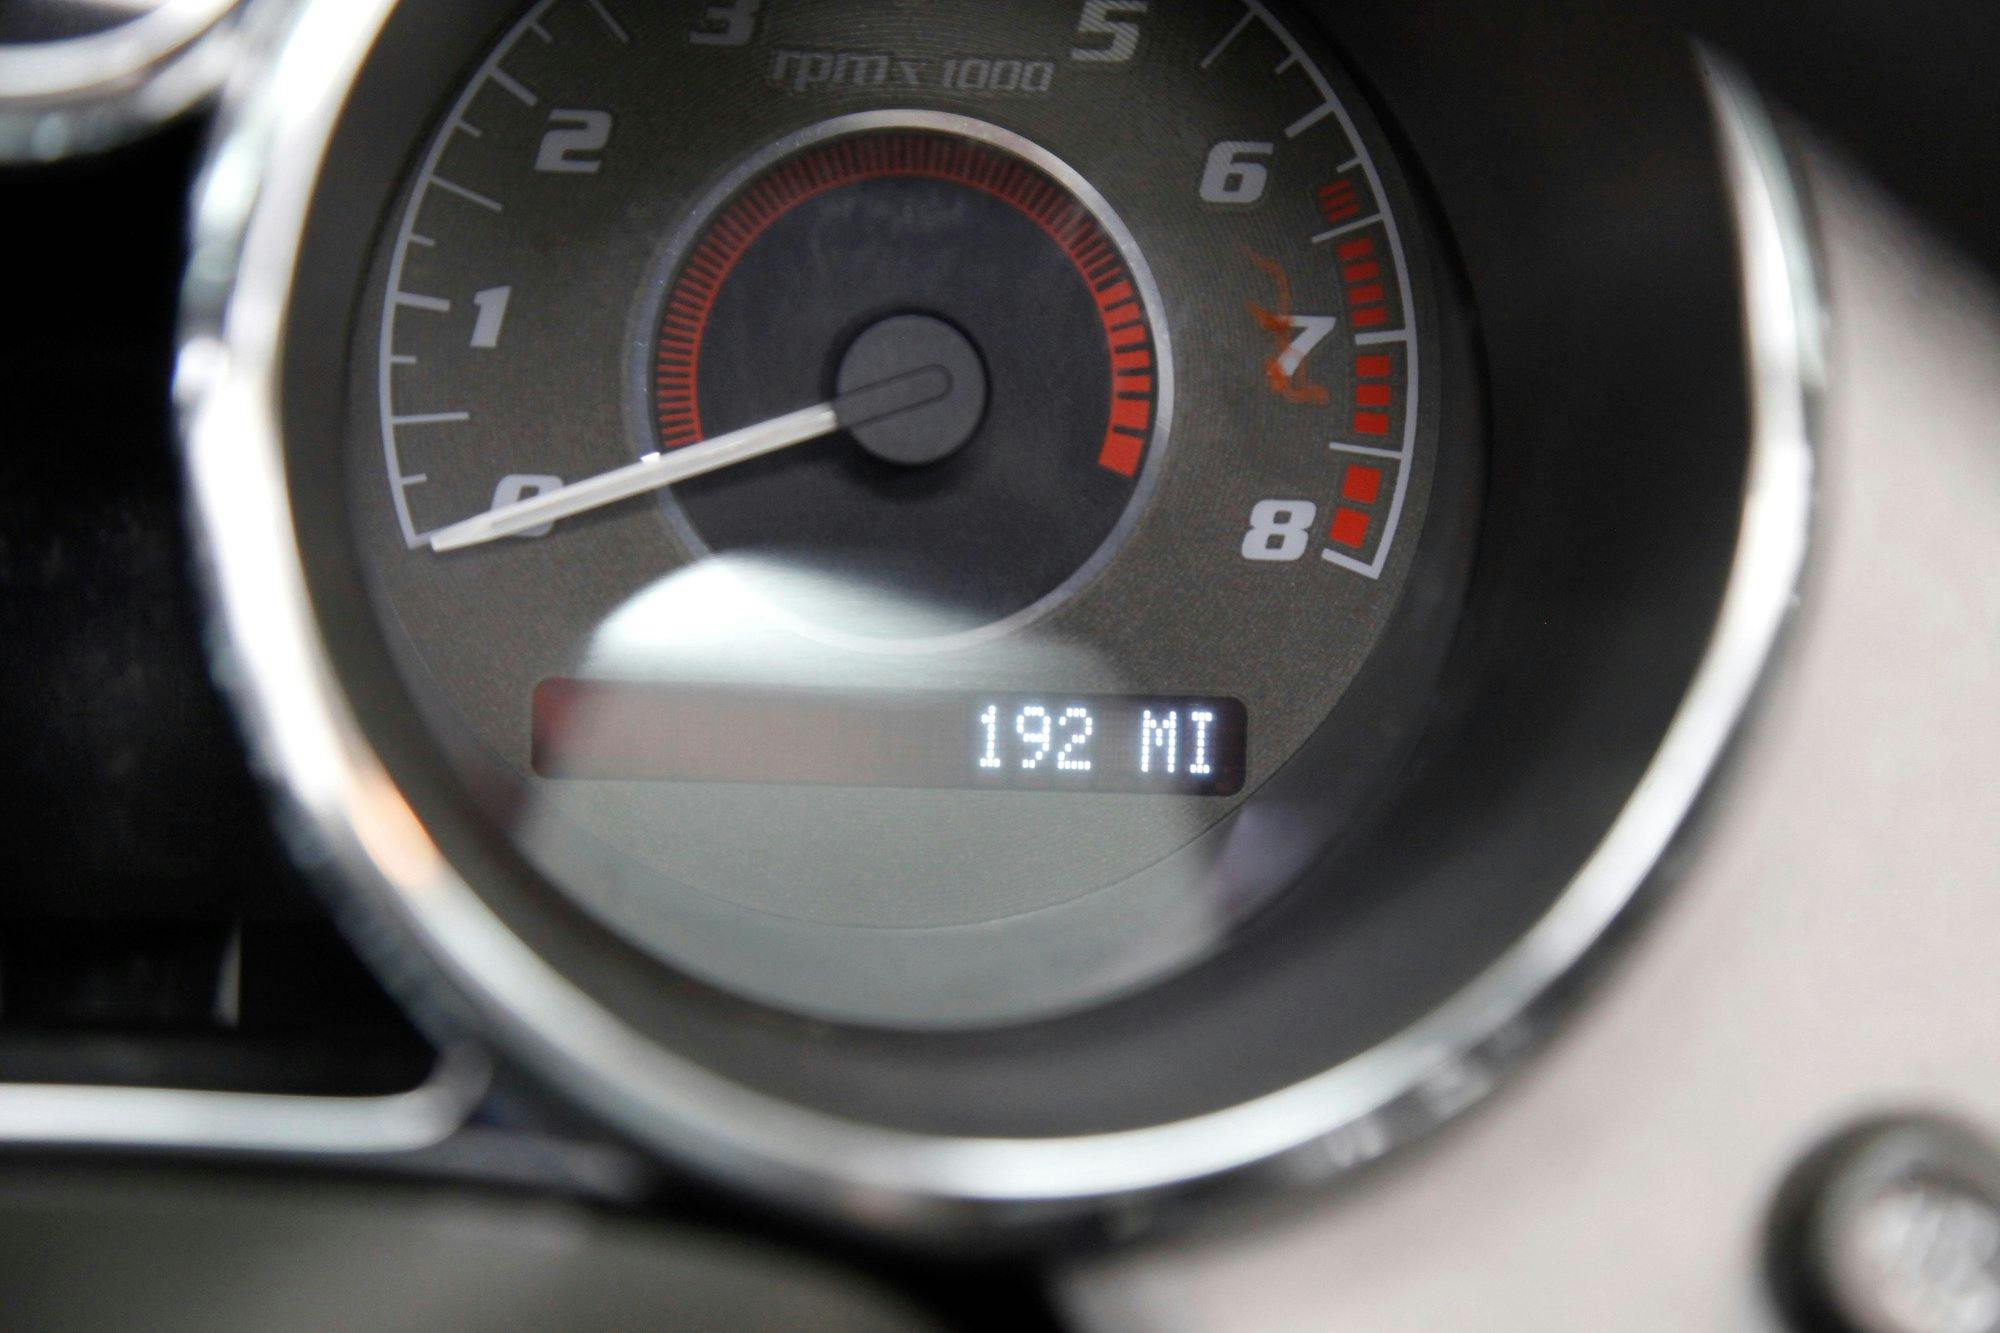 2009 Pontiac Solstice GXP mileage detail